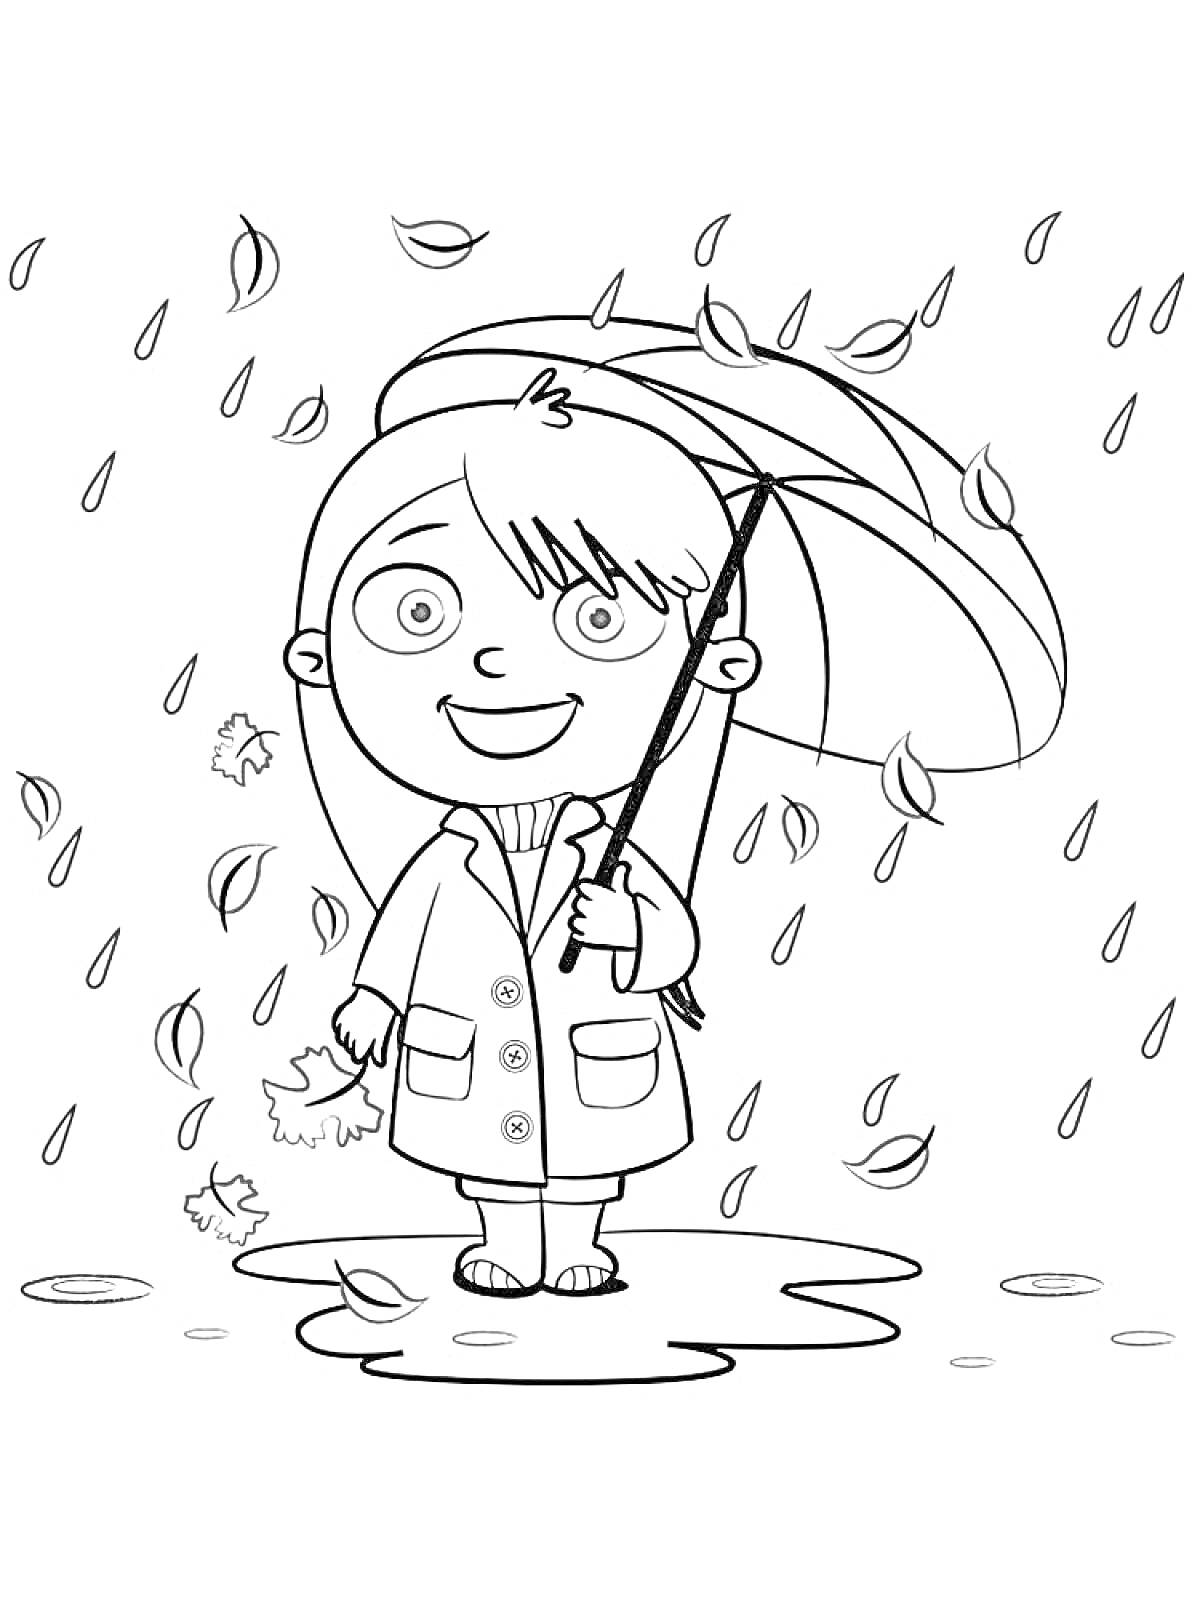 Раскраска Девочка с зонтом под дождем на улице с лужами и падающими листьями